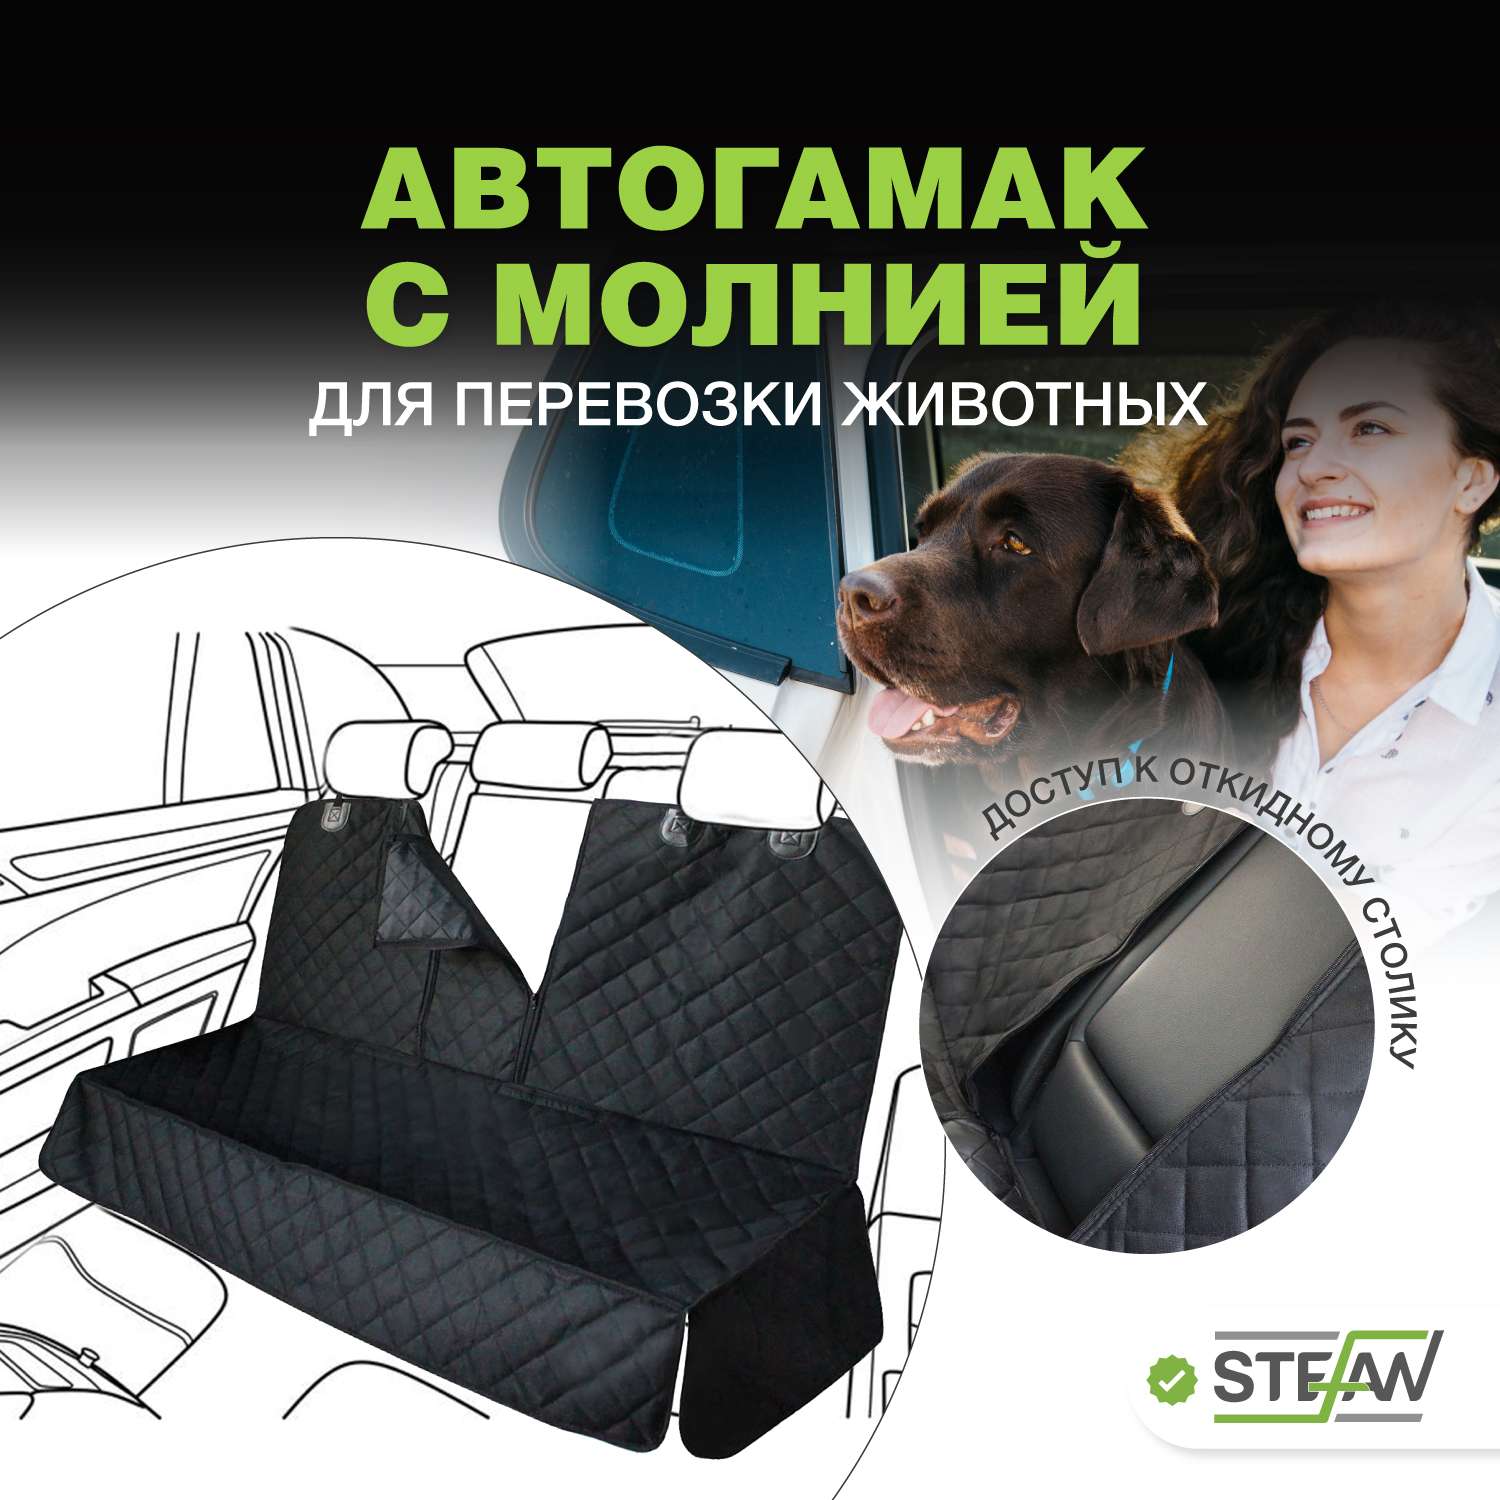 Автогамак для животных Stefan чехол на заднее сиденье 125*137см черный - фото 1